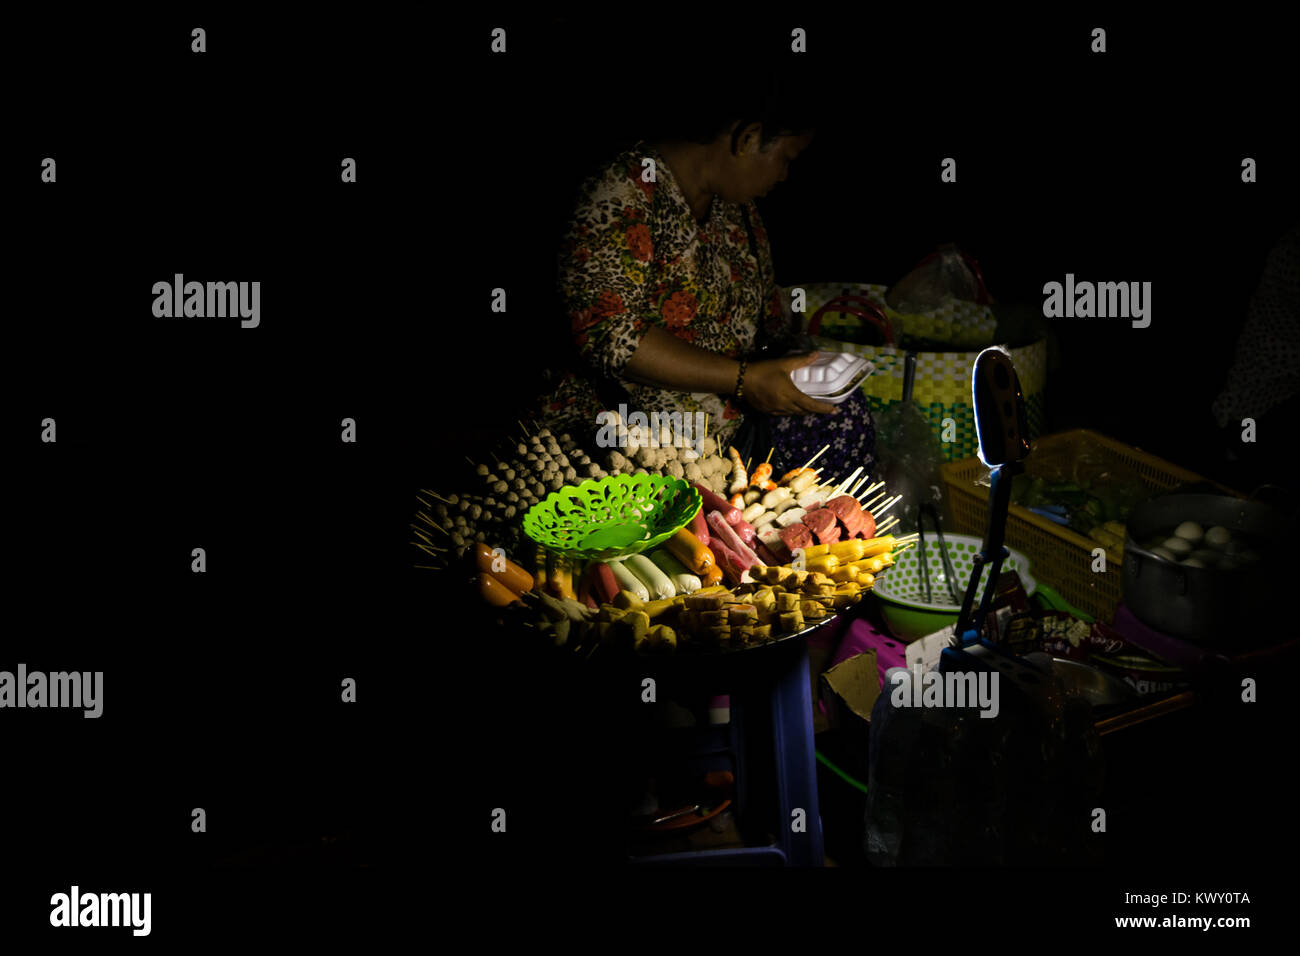 Una donna asiatica la vendita di cibo di strada di notte: alimenti trasformati, salsicce e spiedini, visualizzato nel piatto rotondo. Phnom Penh, Cambogia, sud-est asiatico Foto Stock